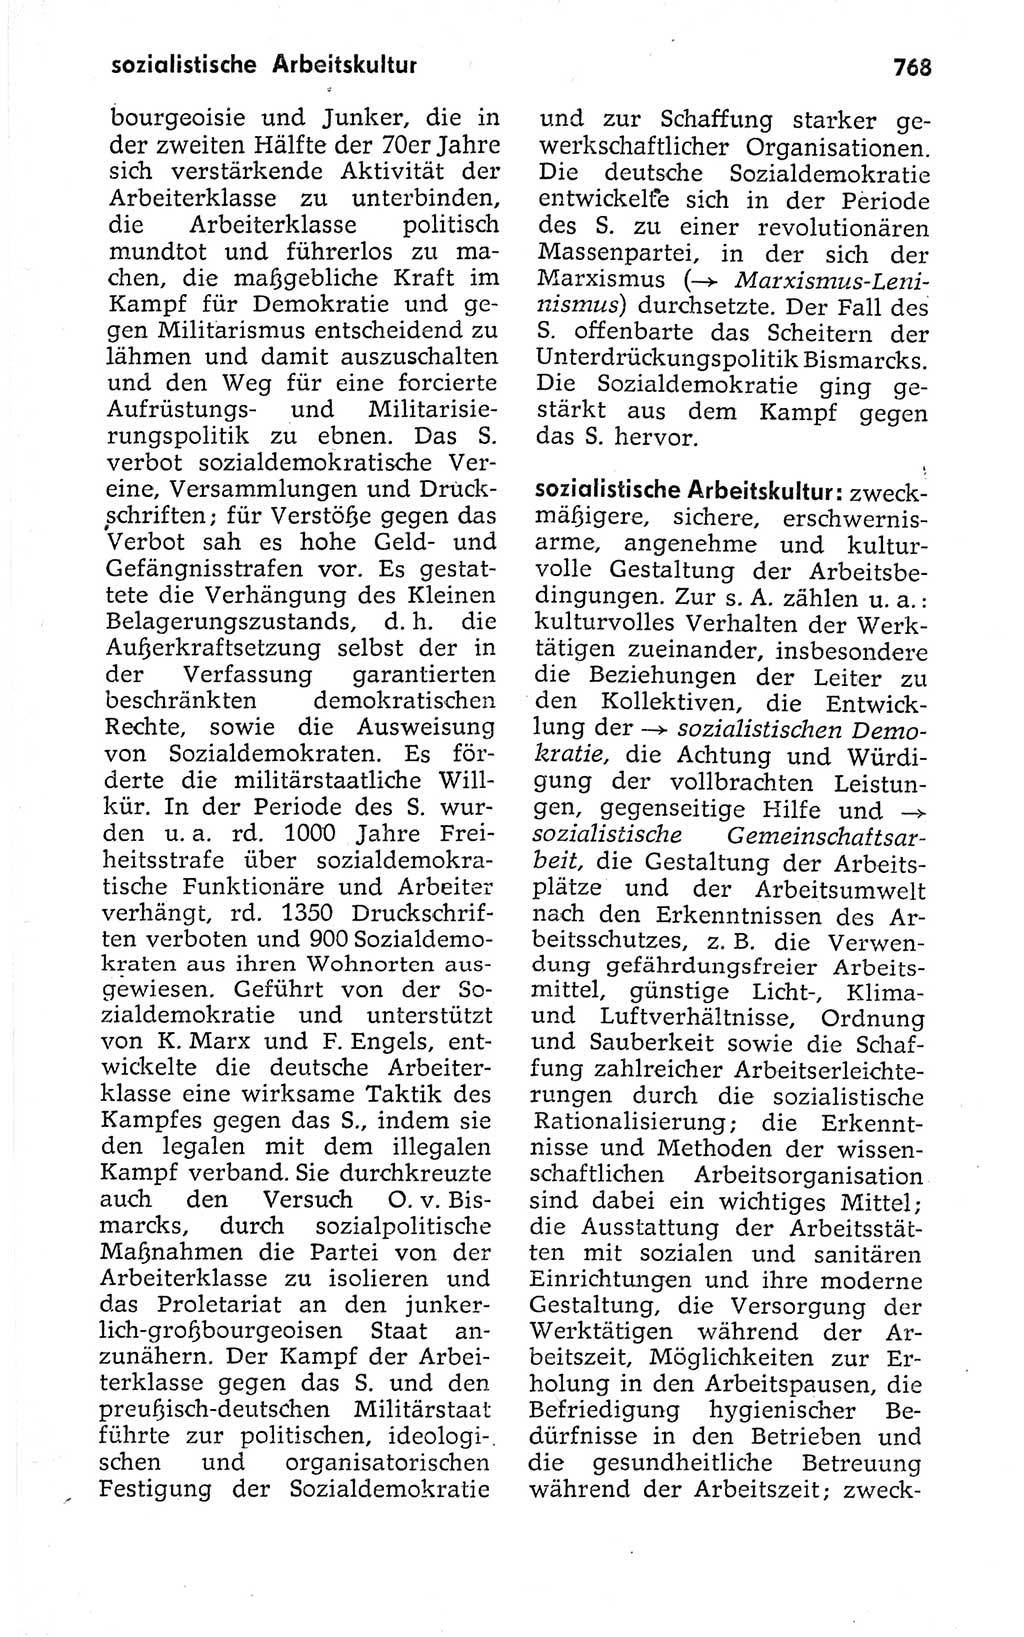 Kleines politisches Wörterbuch [Deutsche Demokratische Republik (DDR)] 1973, Seite 768 (Kl. pol. Wb. DDR 1973, S. 768)